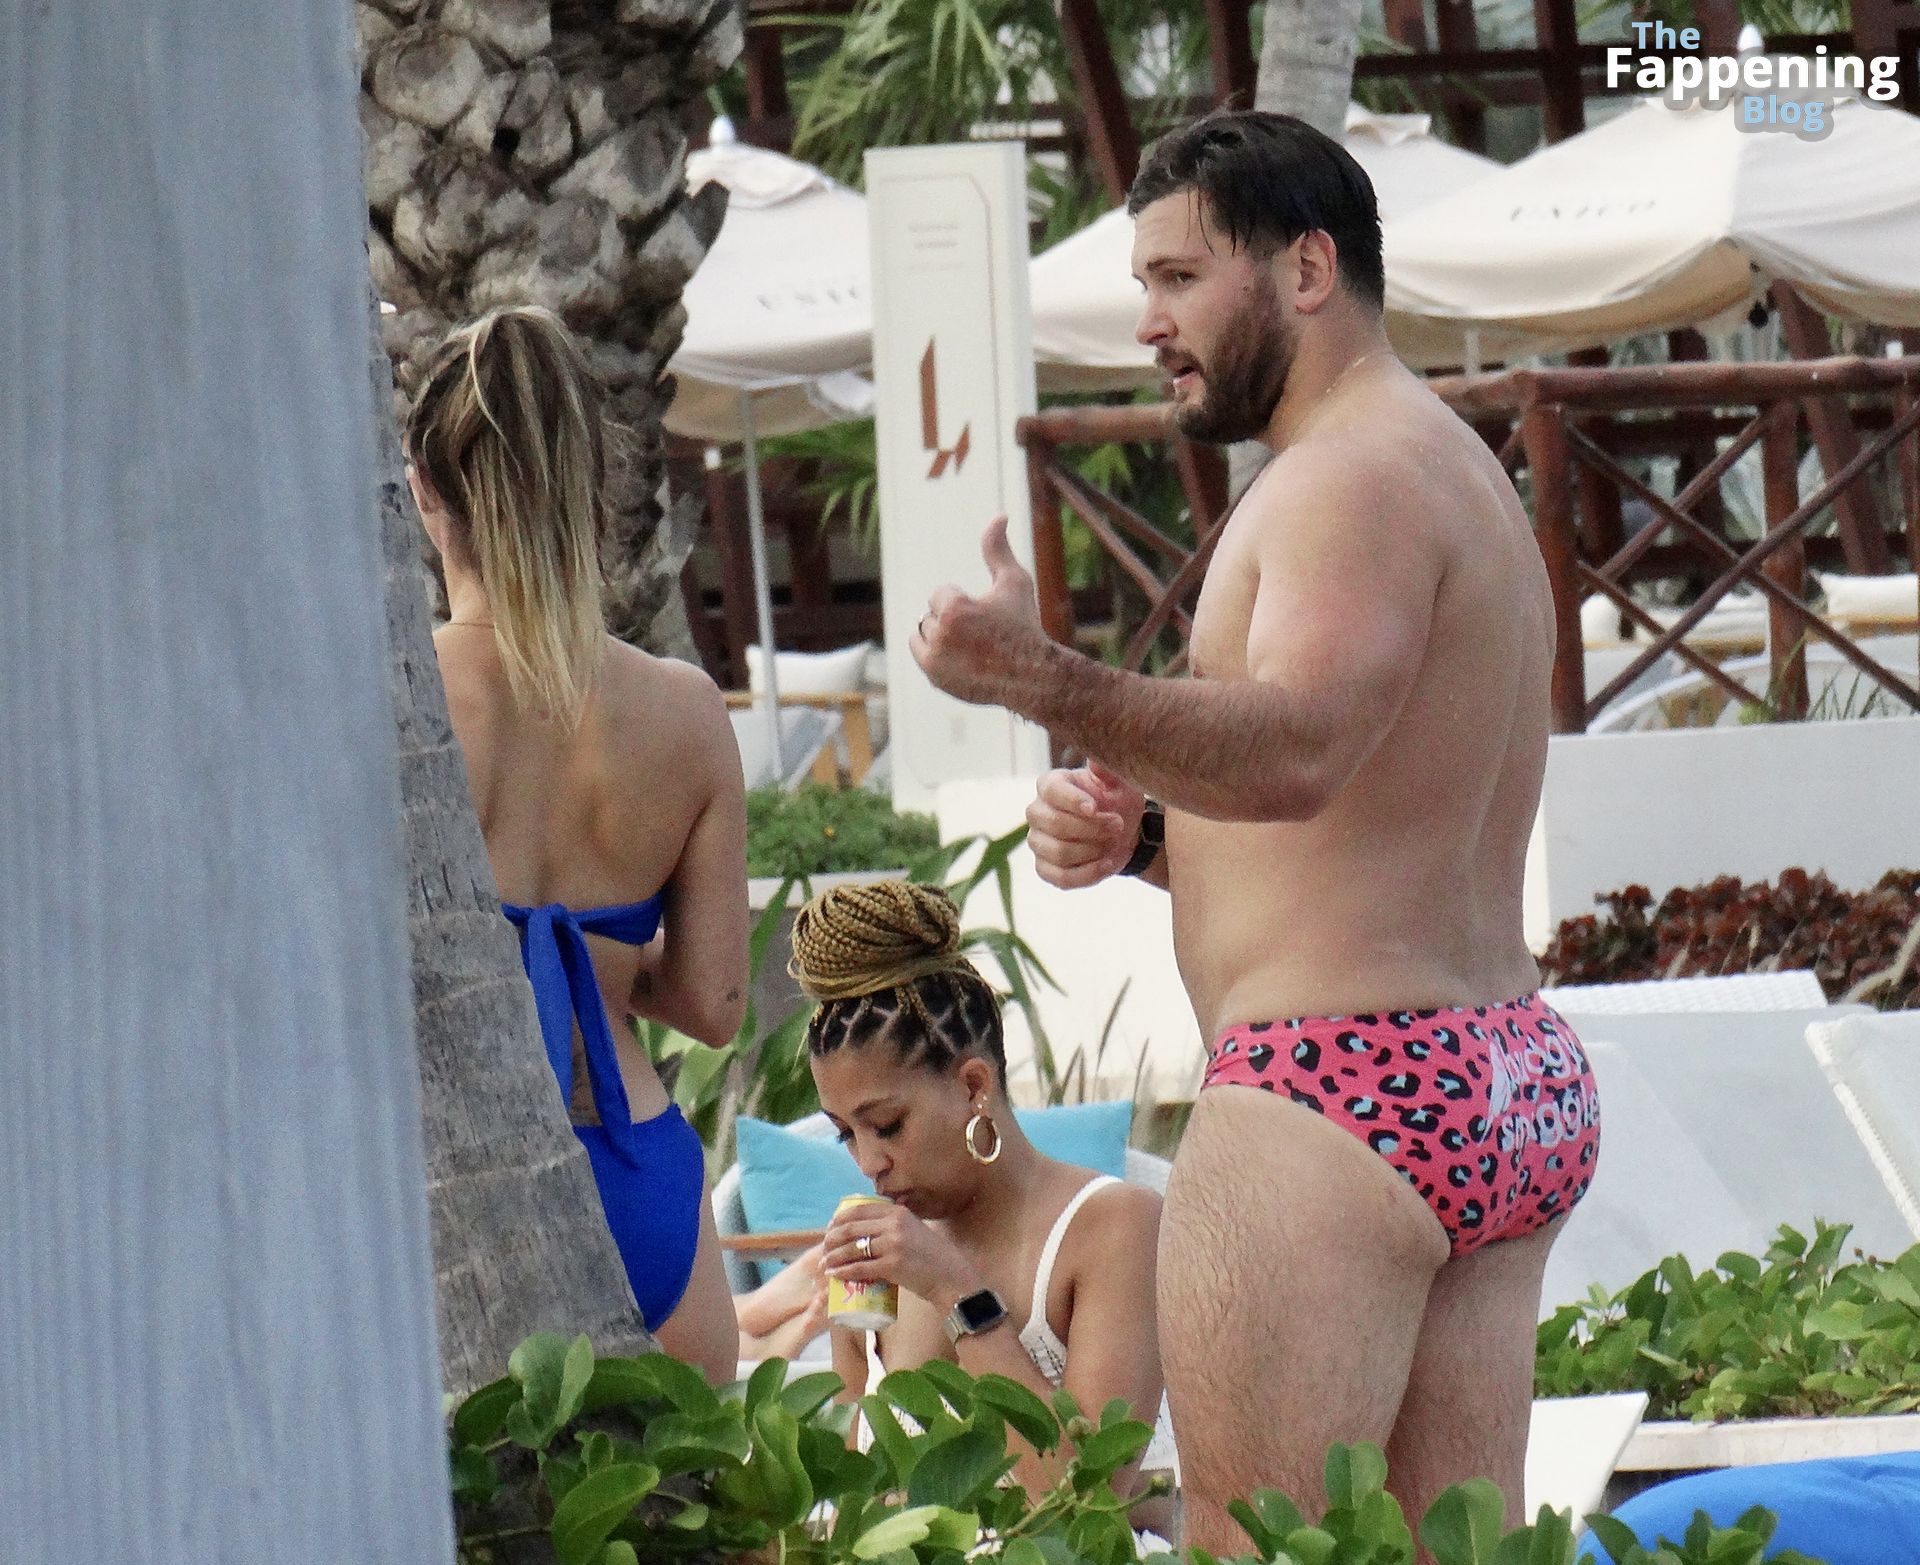 Scheana Shay Looks Hot in a Blue Bikini in Riviera Maya (36 Photos)